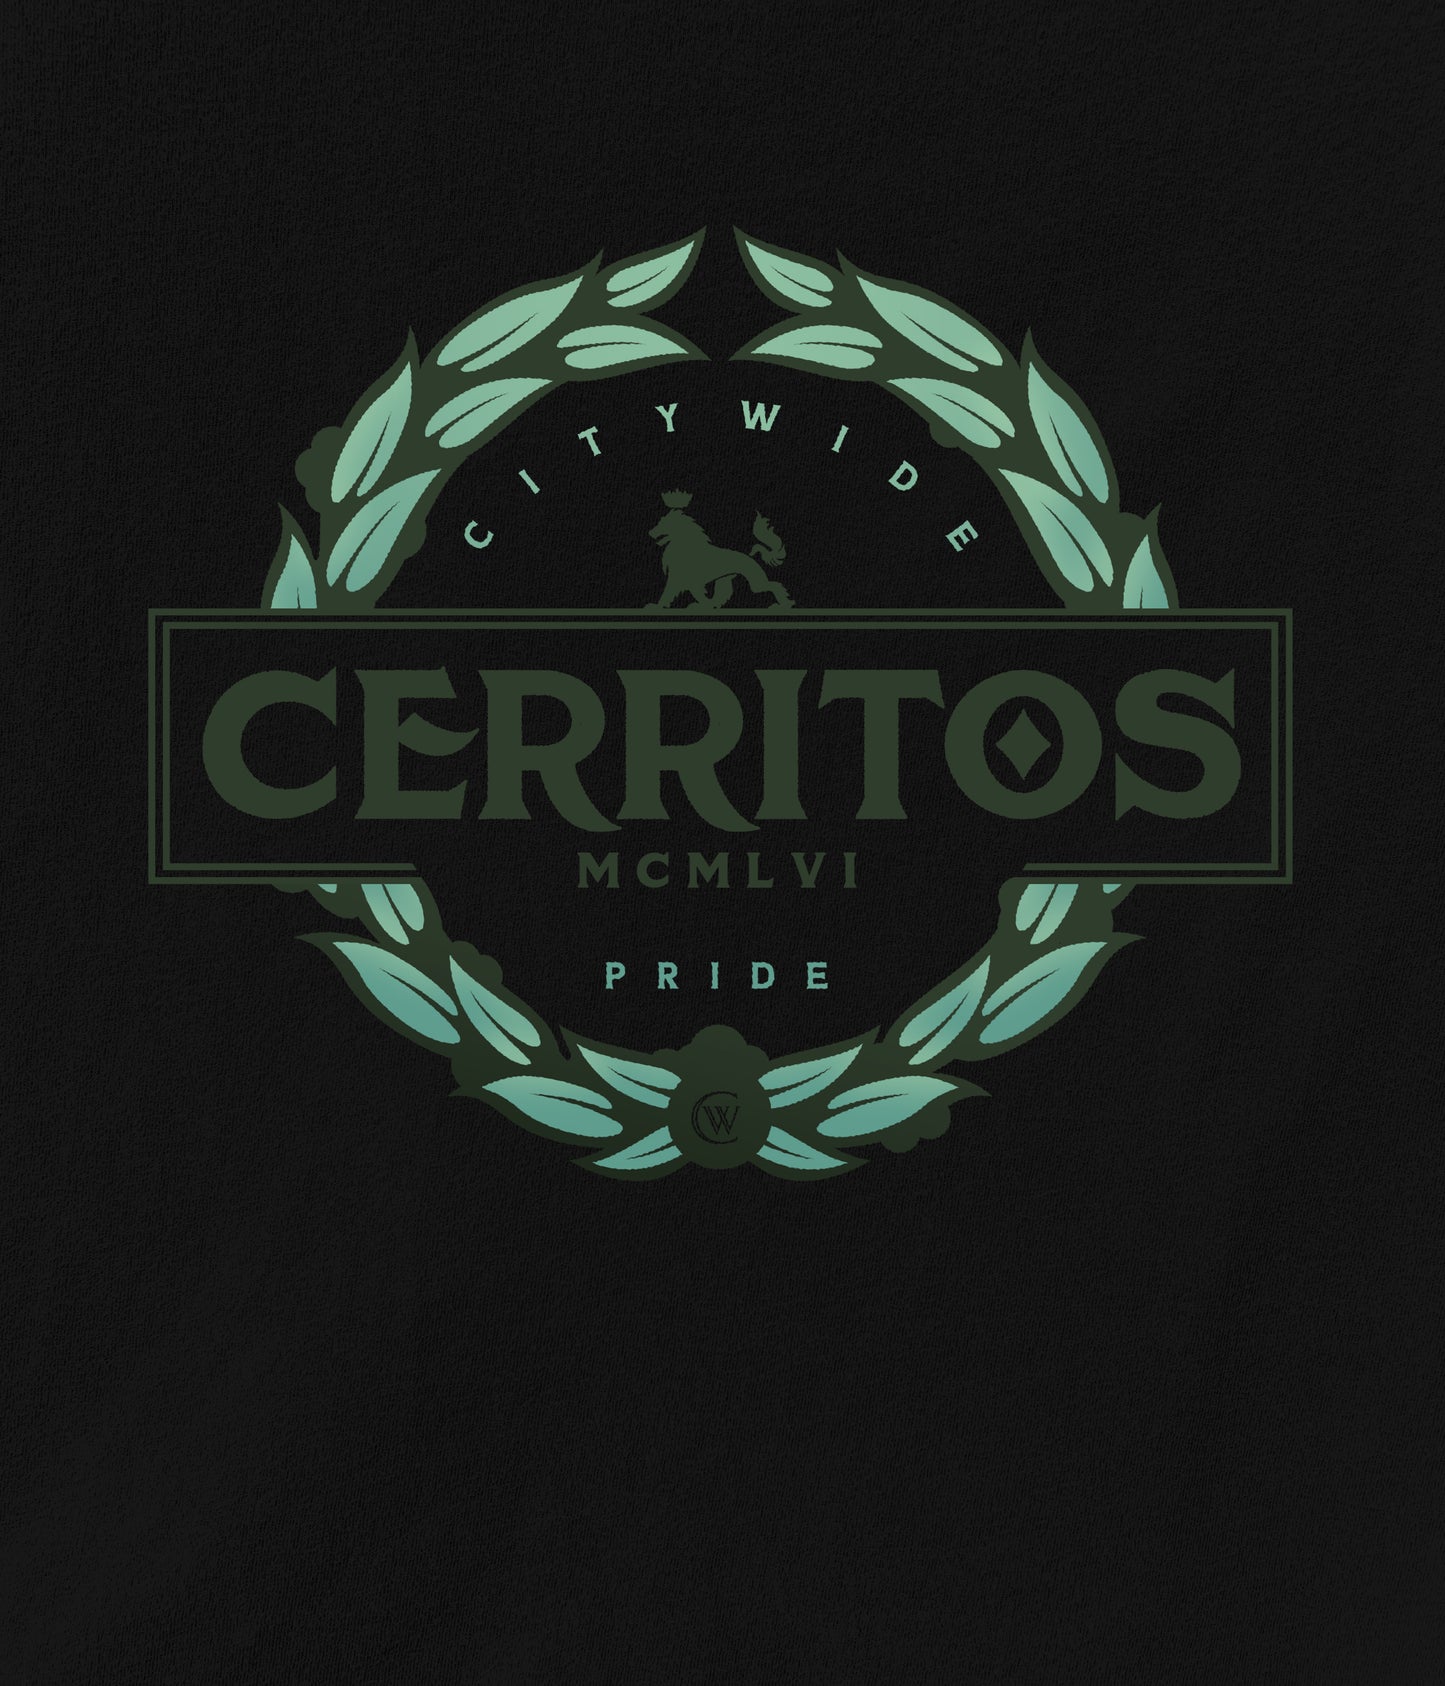 Cerritos The Pride